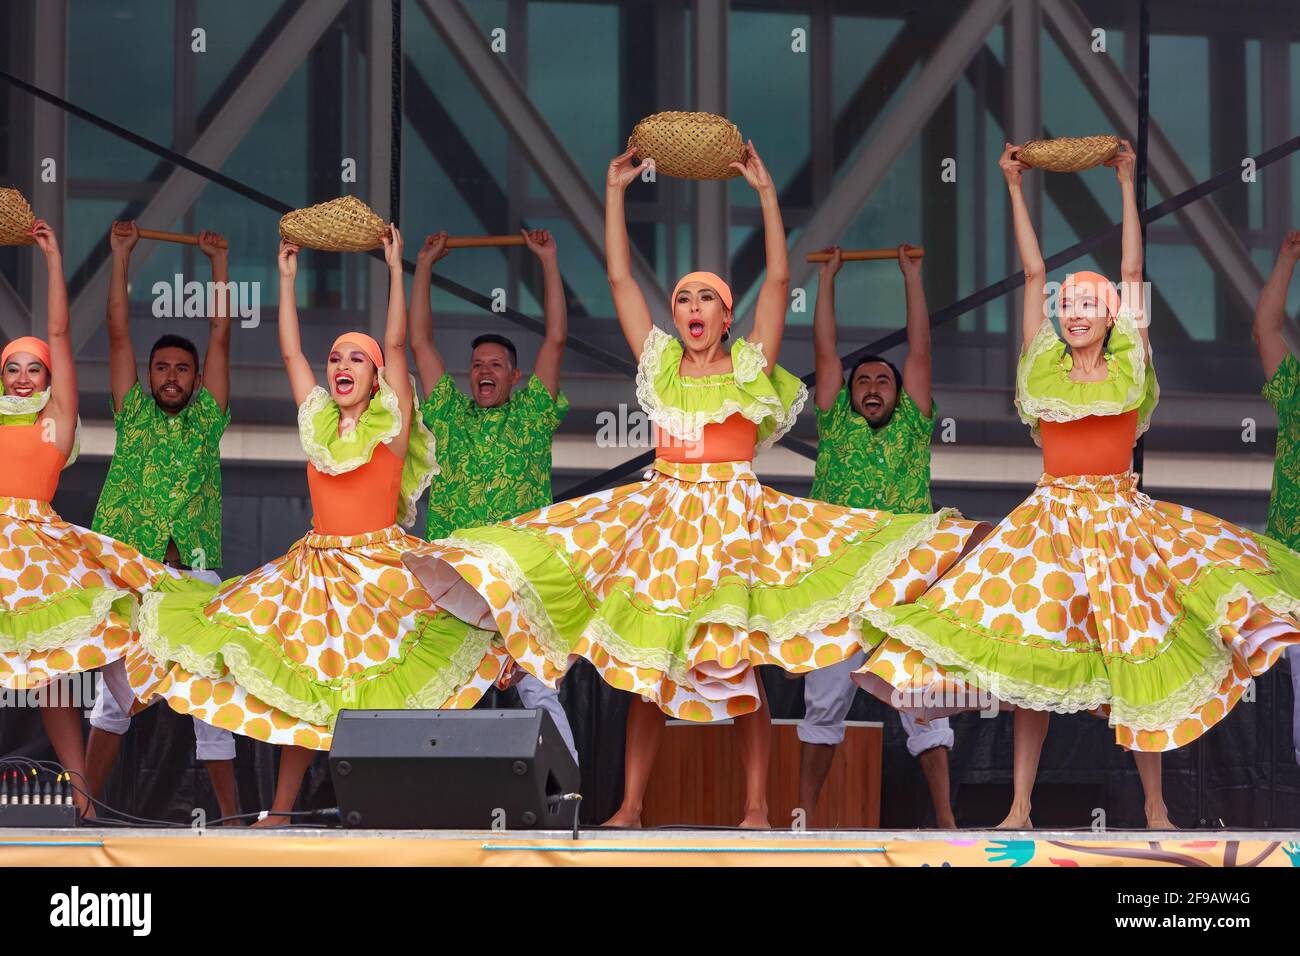 Eine Truppe von Tänzern aus Kolumbien in farbenfrohen grünen und orangen Outfits, die auf der Bühne mit Körben als Requisiten auftreten Stockfoto